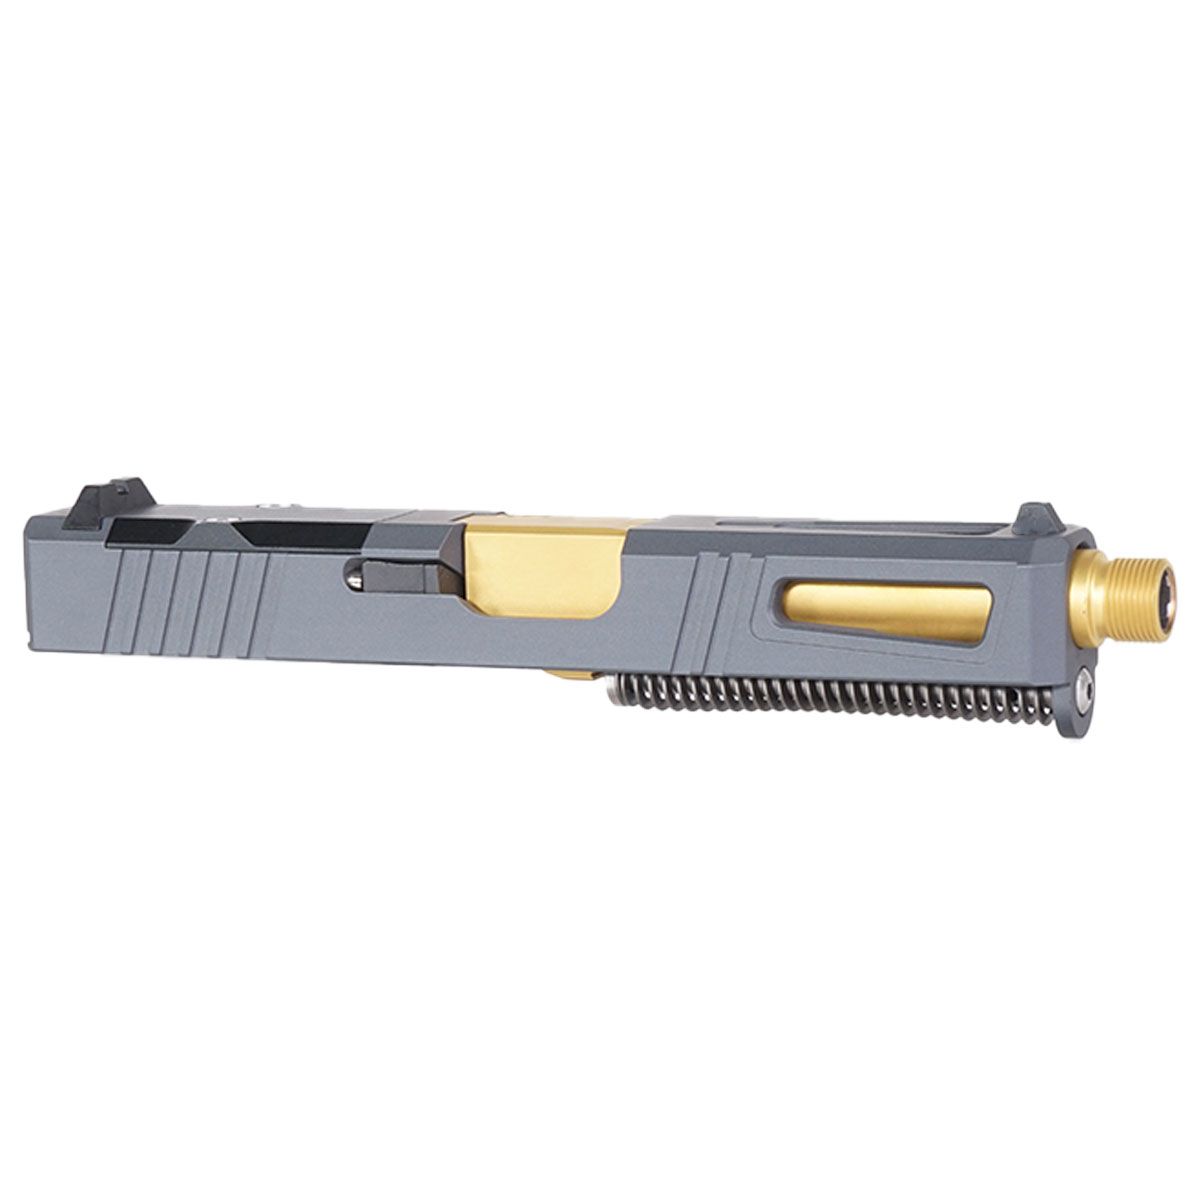 DDS 'Gold Strike-Suppressor Ready' 9mm Complete Slide Kit - Glock 19 Gen 1-3 Compatible